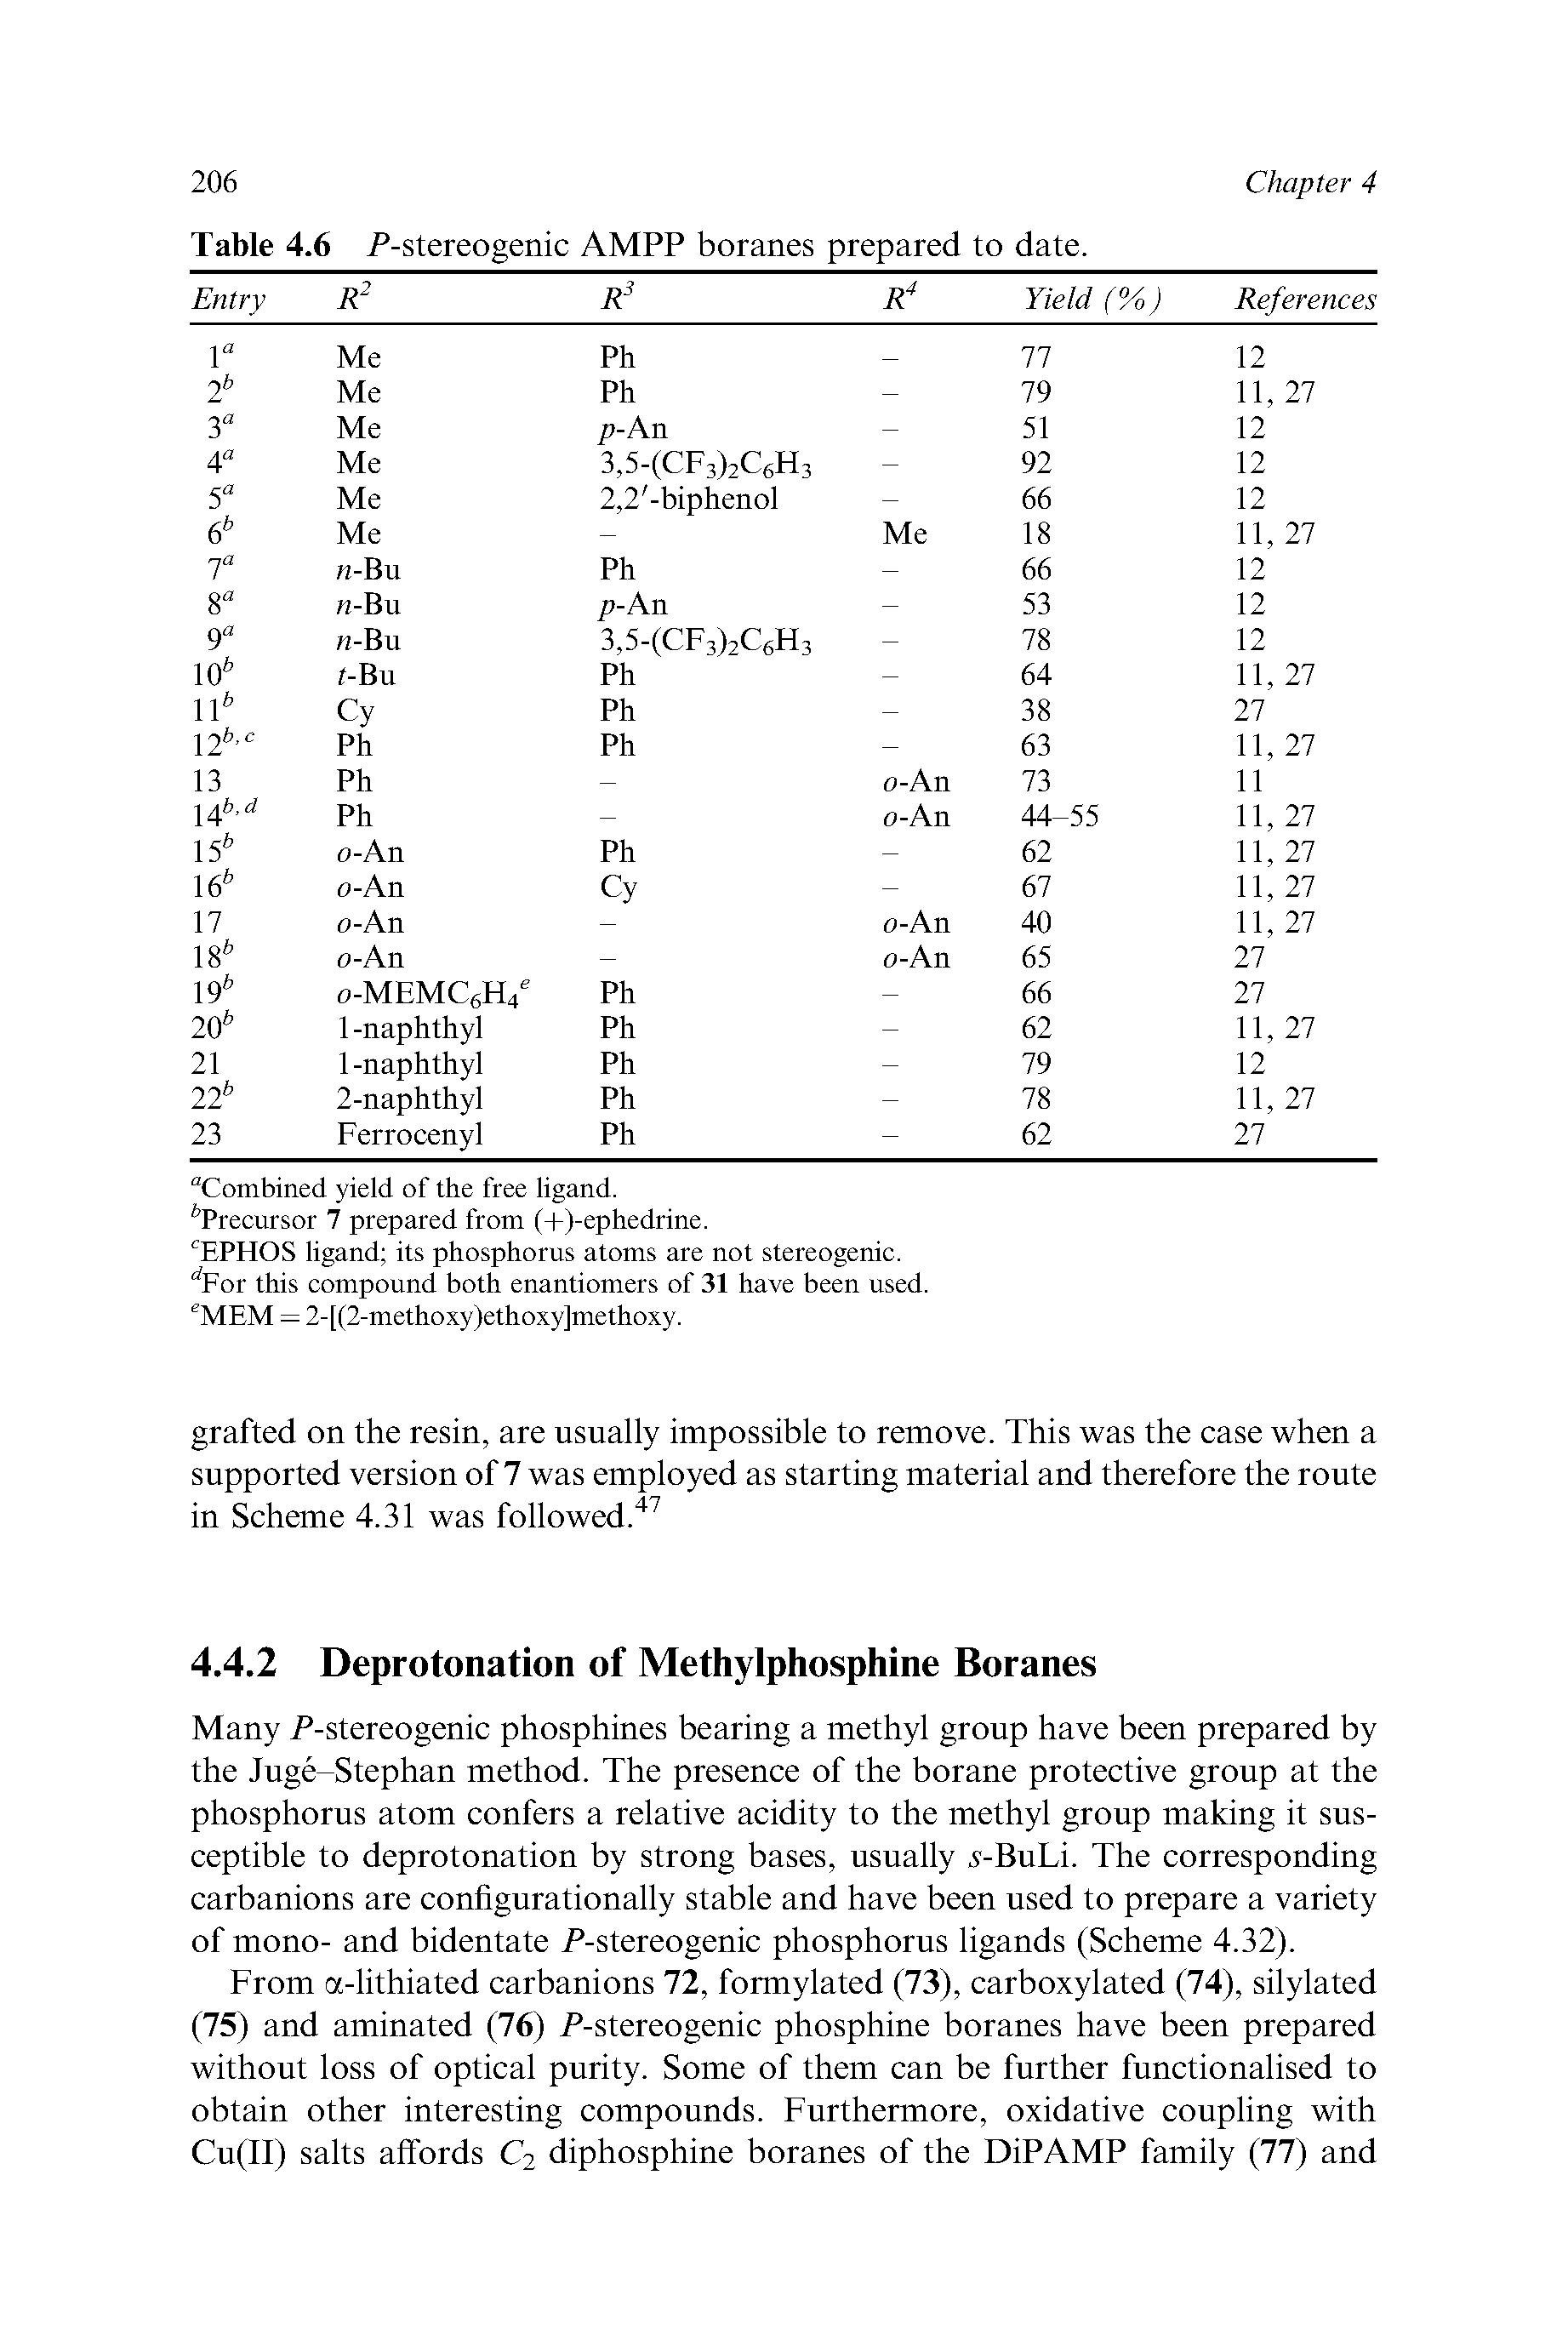 Table 4.6 P-stereogenic AMPP boranes prepared to date.